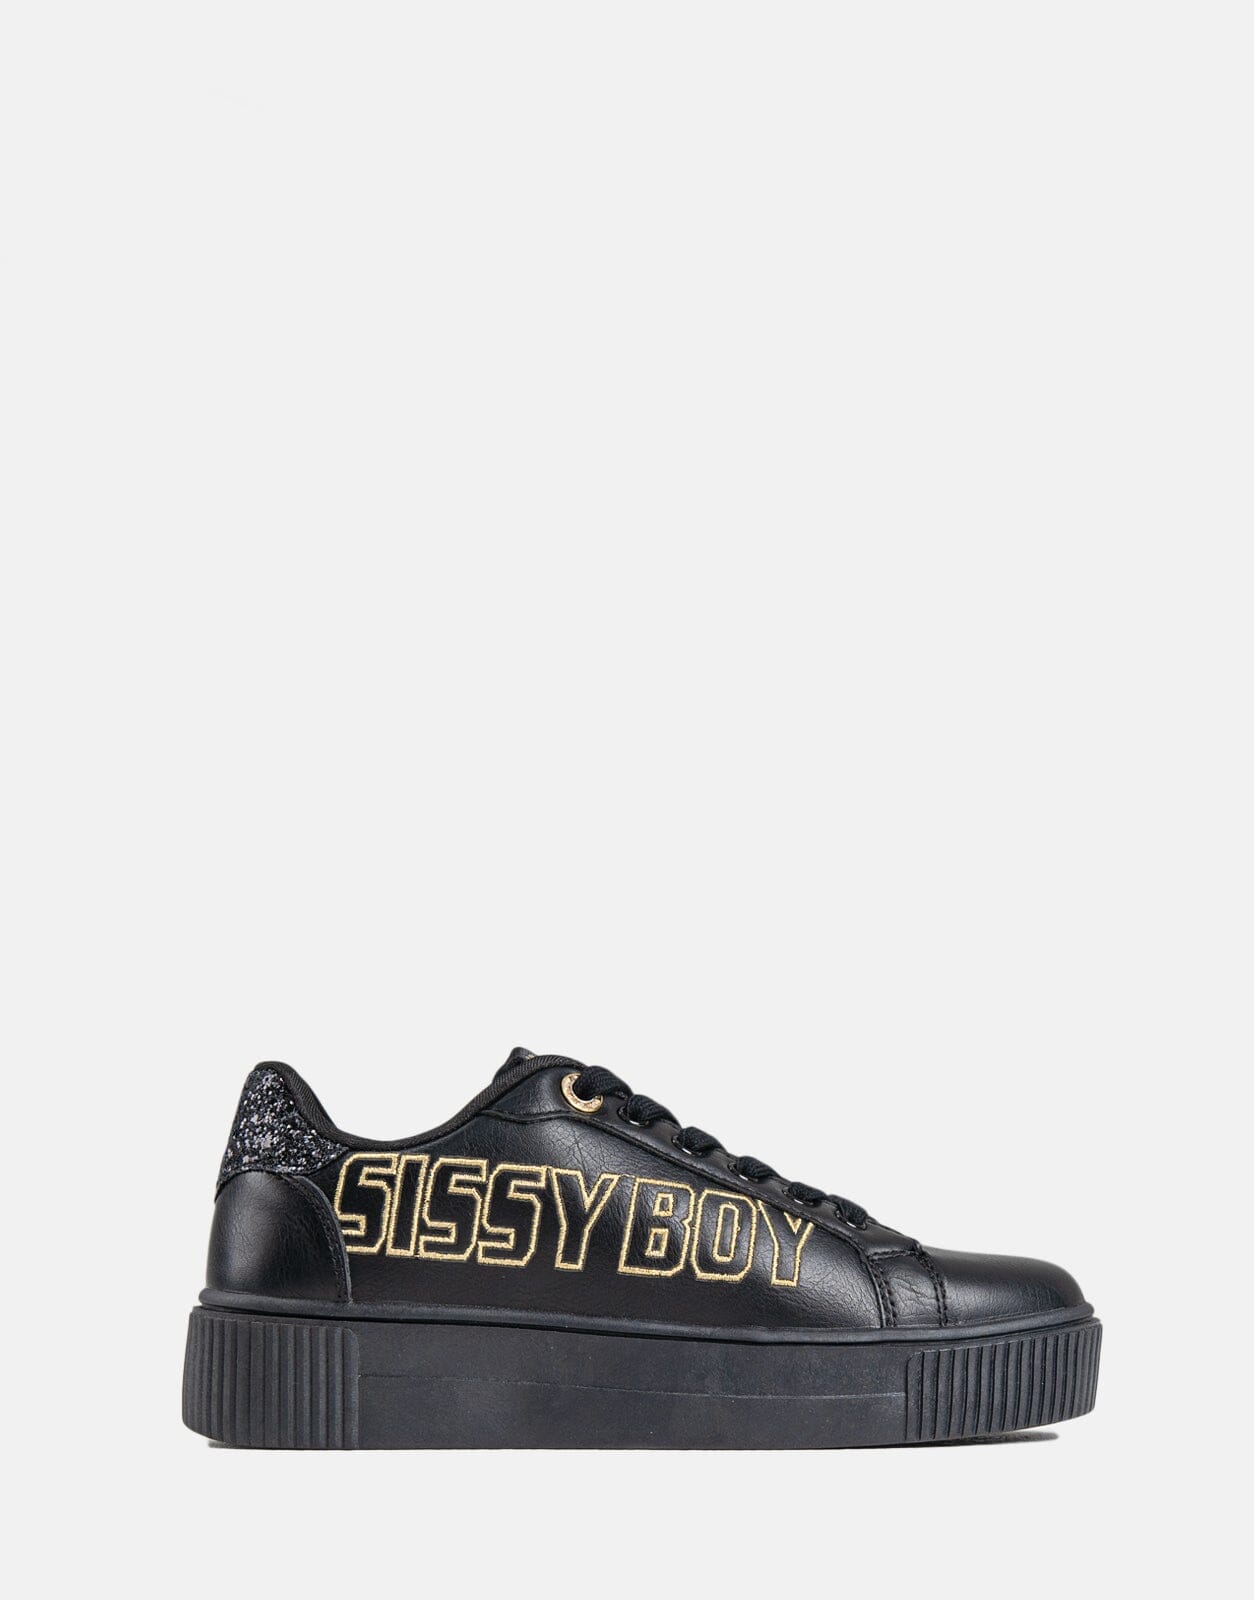 Sissy Boy Side Gold Font Black Sneaker - Subwear